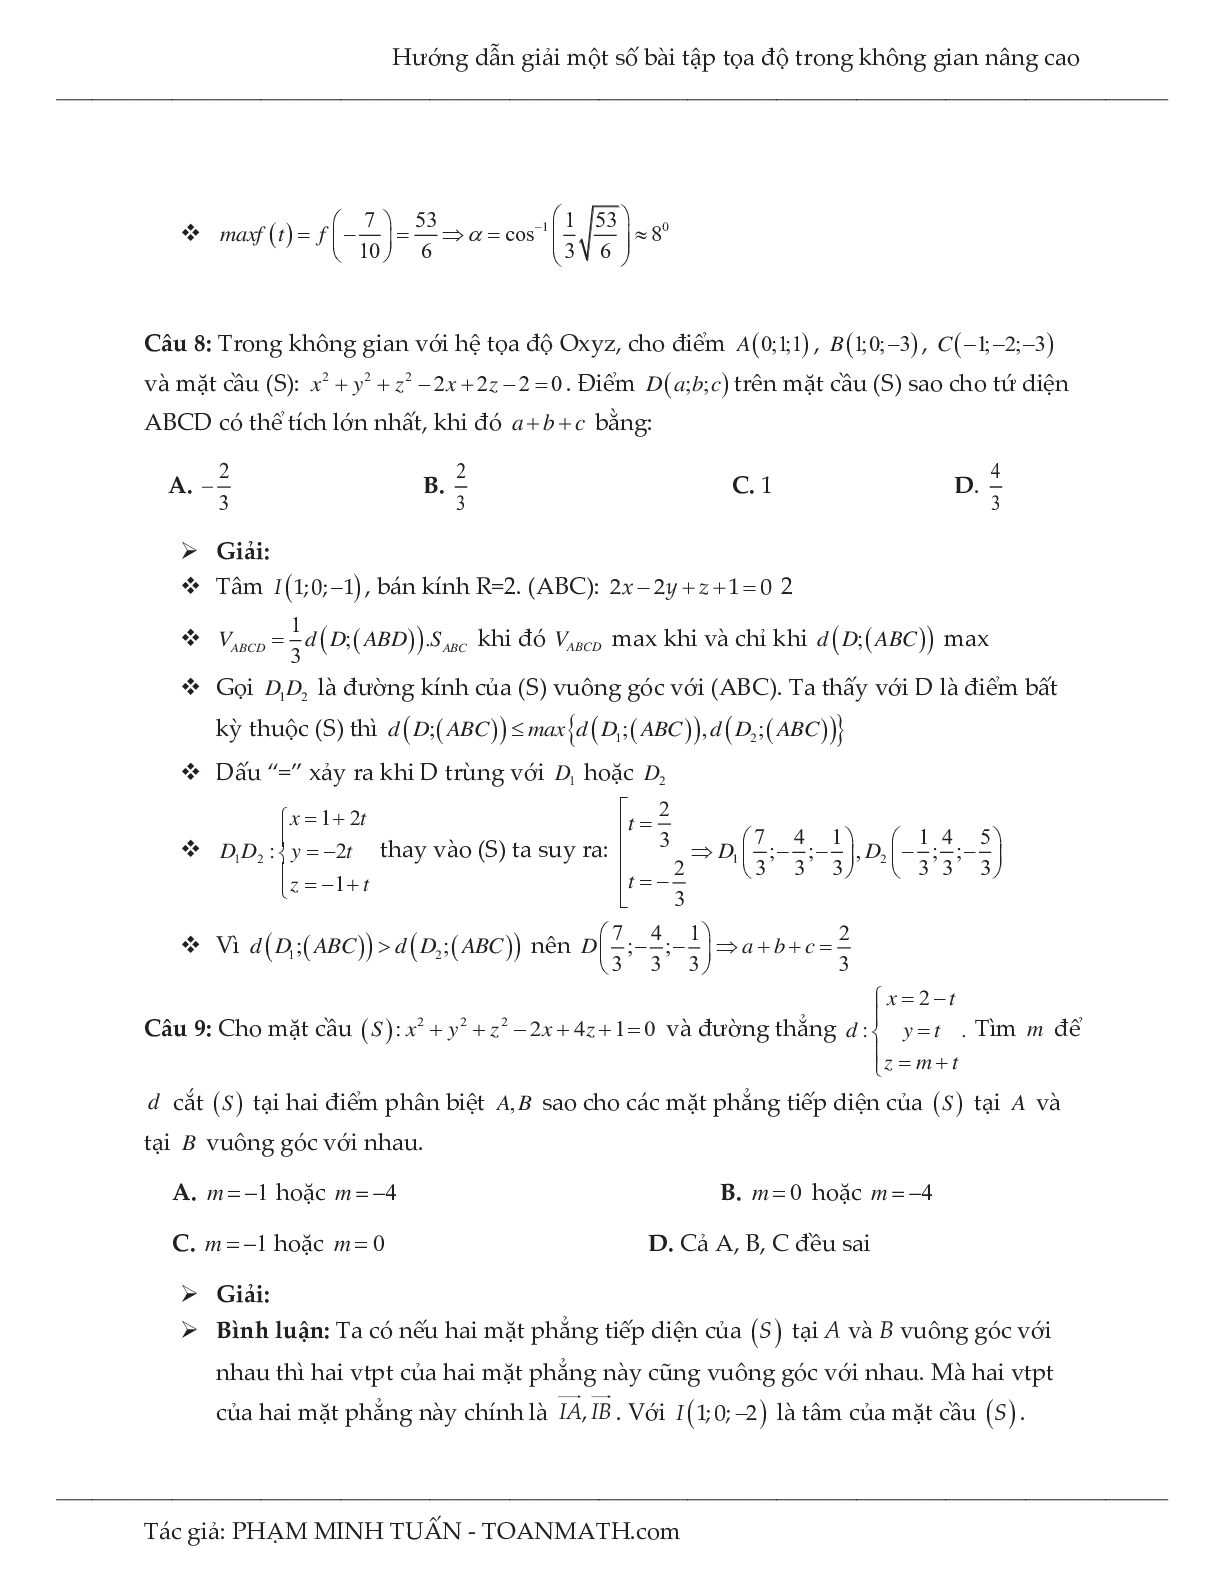 Hướng dẫn giải một số bài tập tọa độ trong không gian nâng cao môn Toán lớp 12 (trang 5)